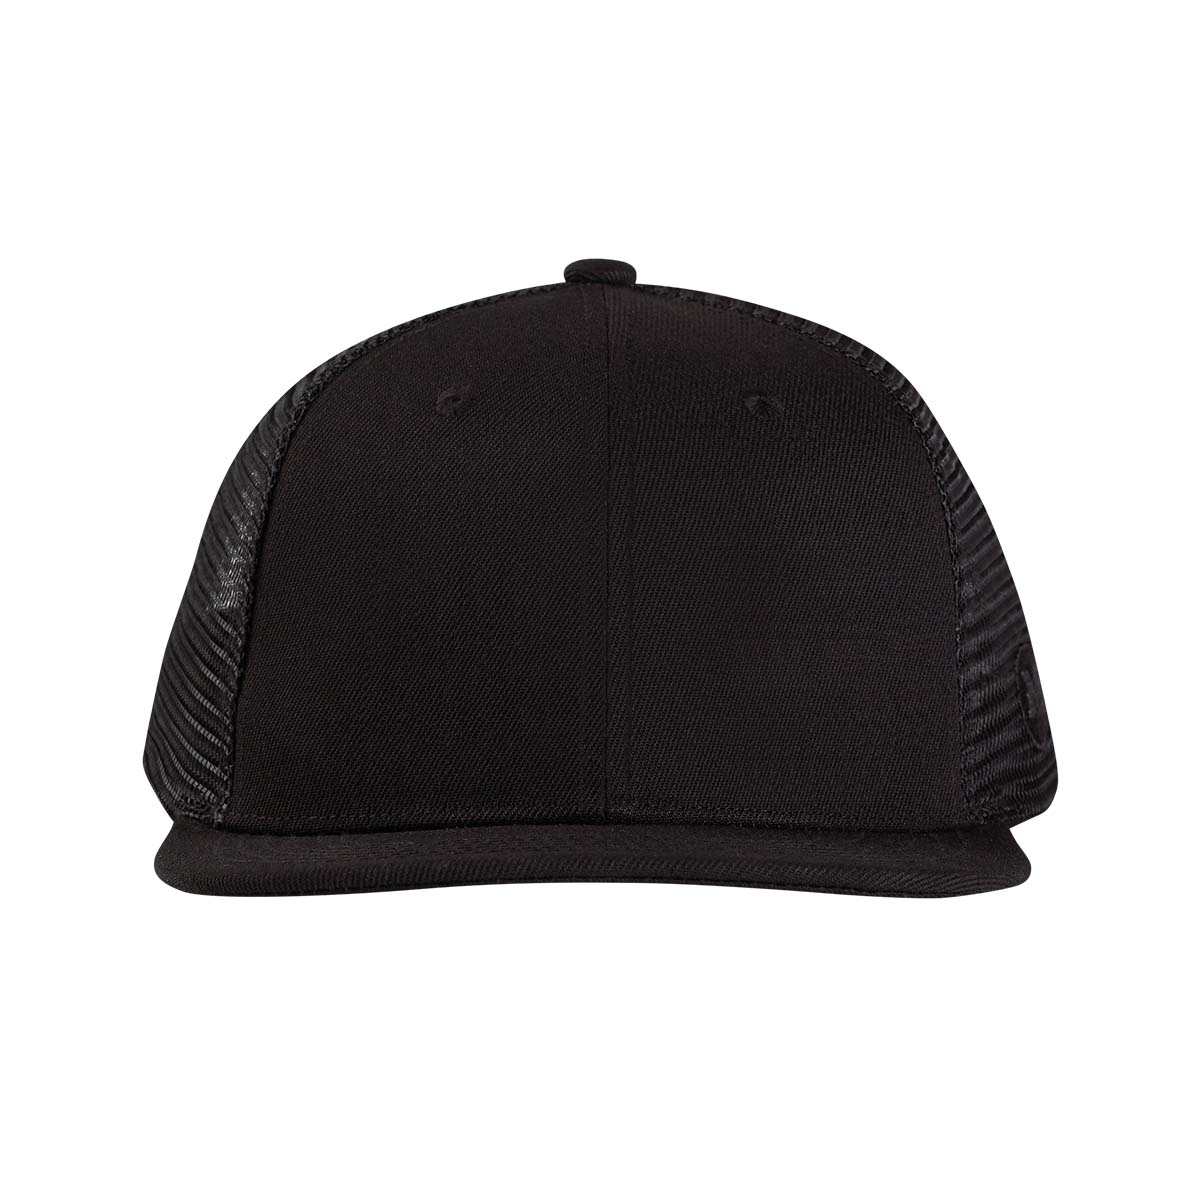 Black Blank Trucker Hat - Sleek & Spacious Design